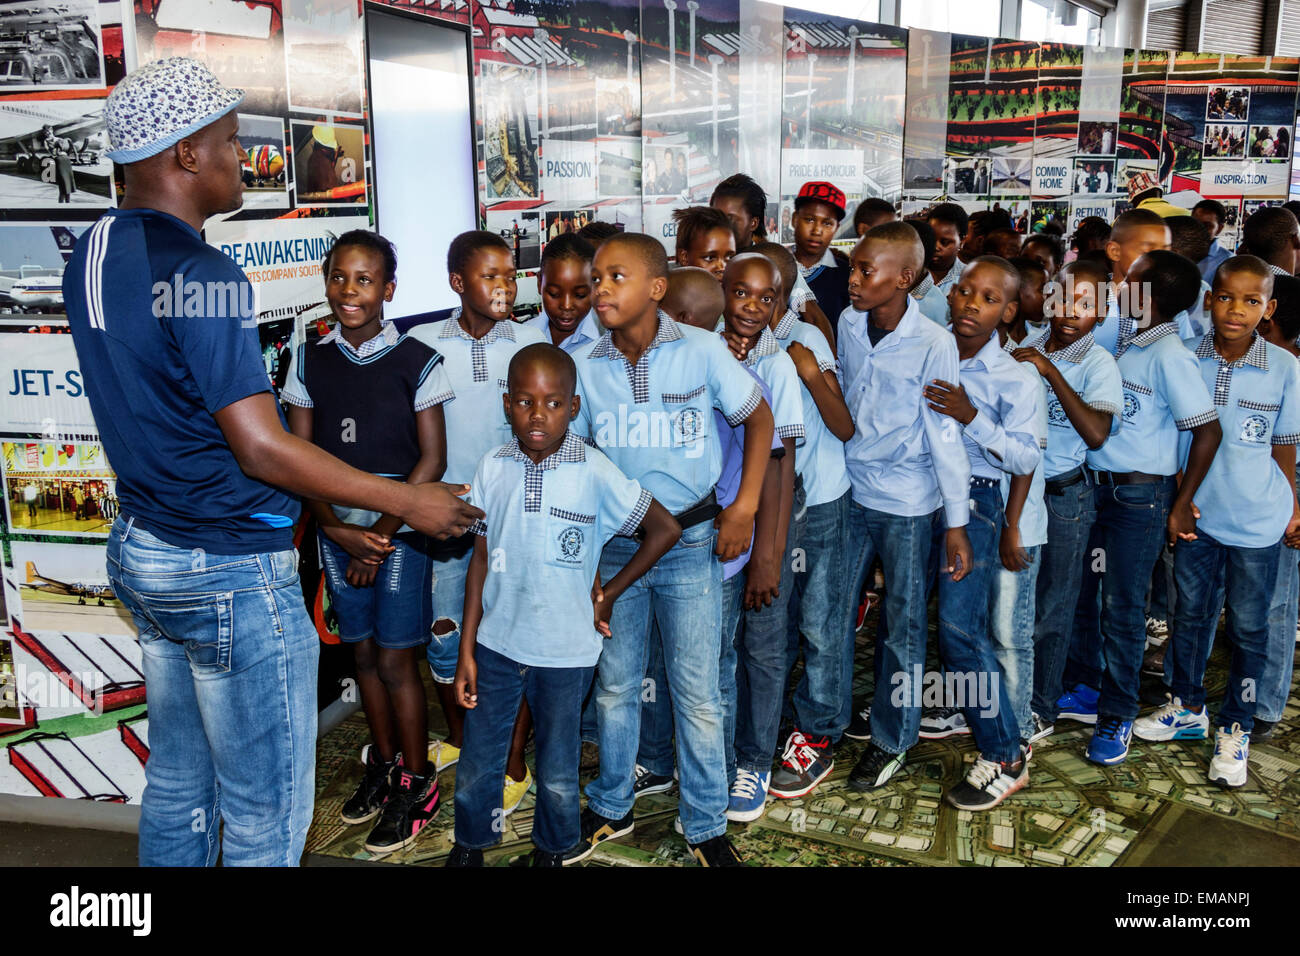 Johannesburg Südafrika, O. R. Tambo International Airport, Terminal, Gate, Klasse Field Trip, Schwarz männlich junge Jungen Kinder Mädchen Mädchen, weiblich junge Stockfoto